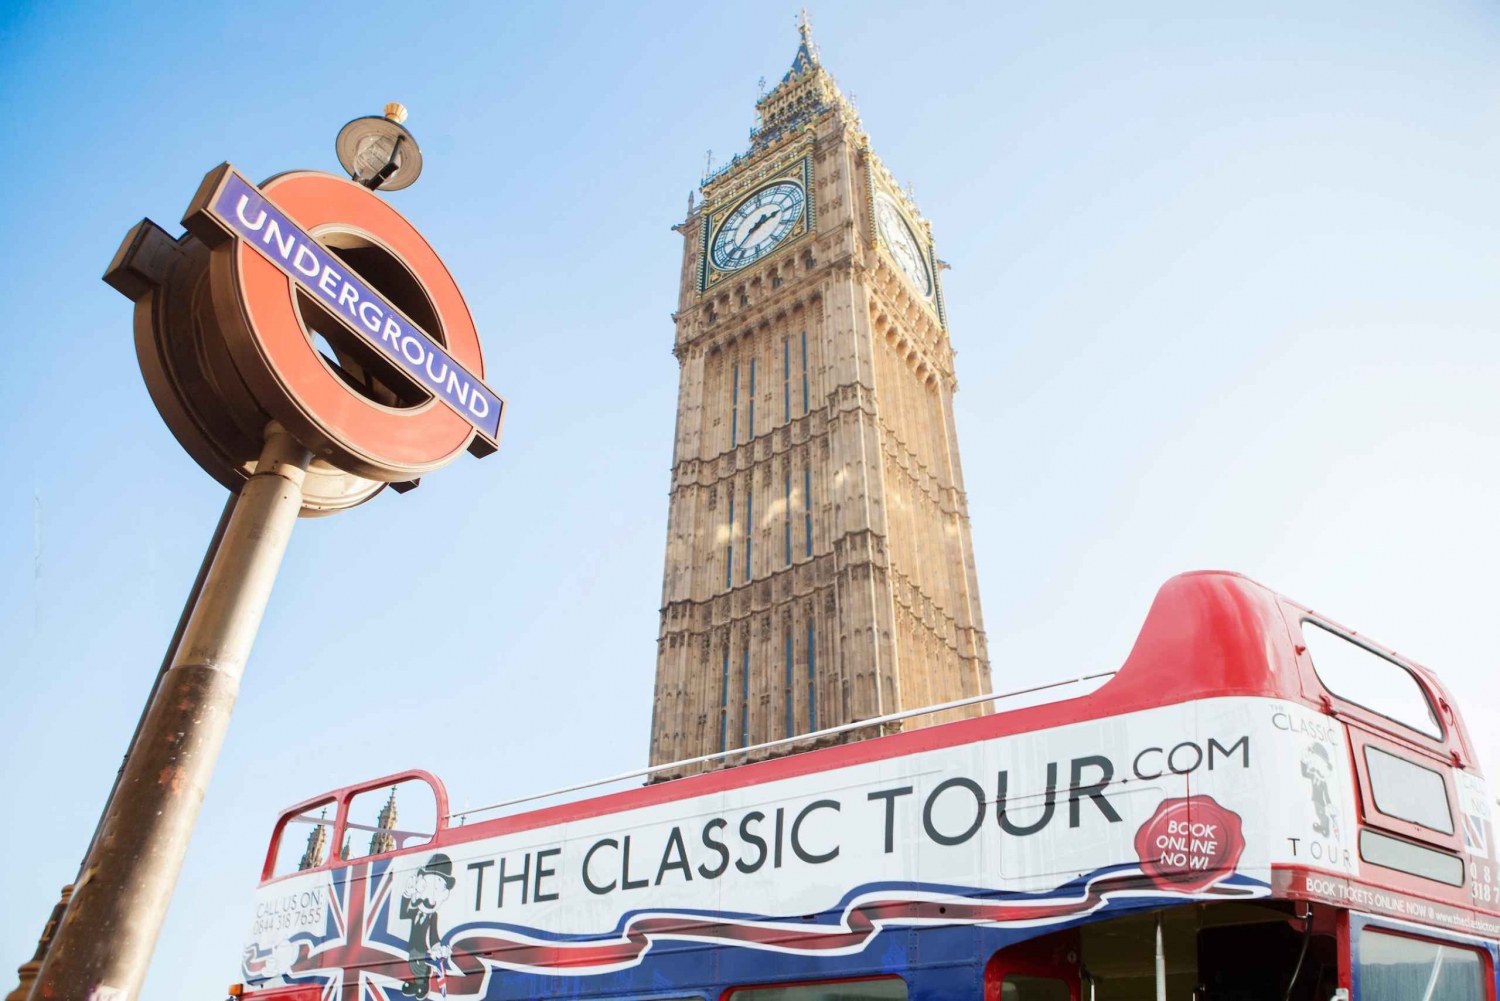 London: Open-Top Vintage Bus Tour med rejseleder